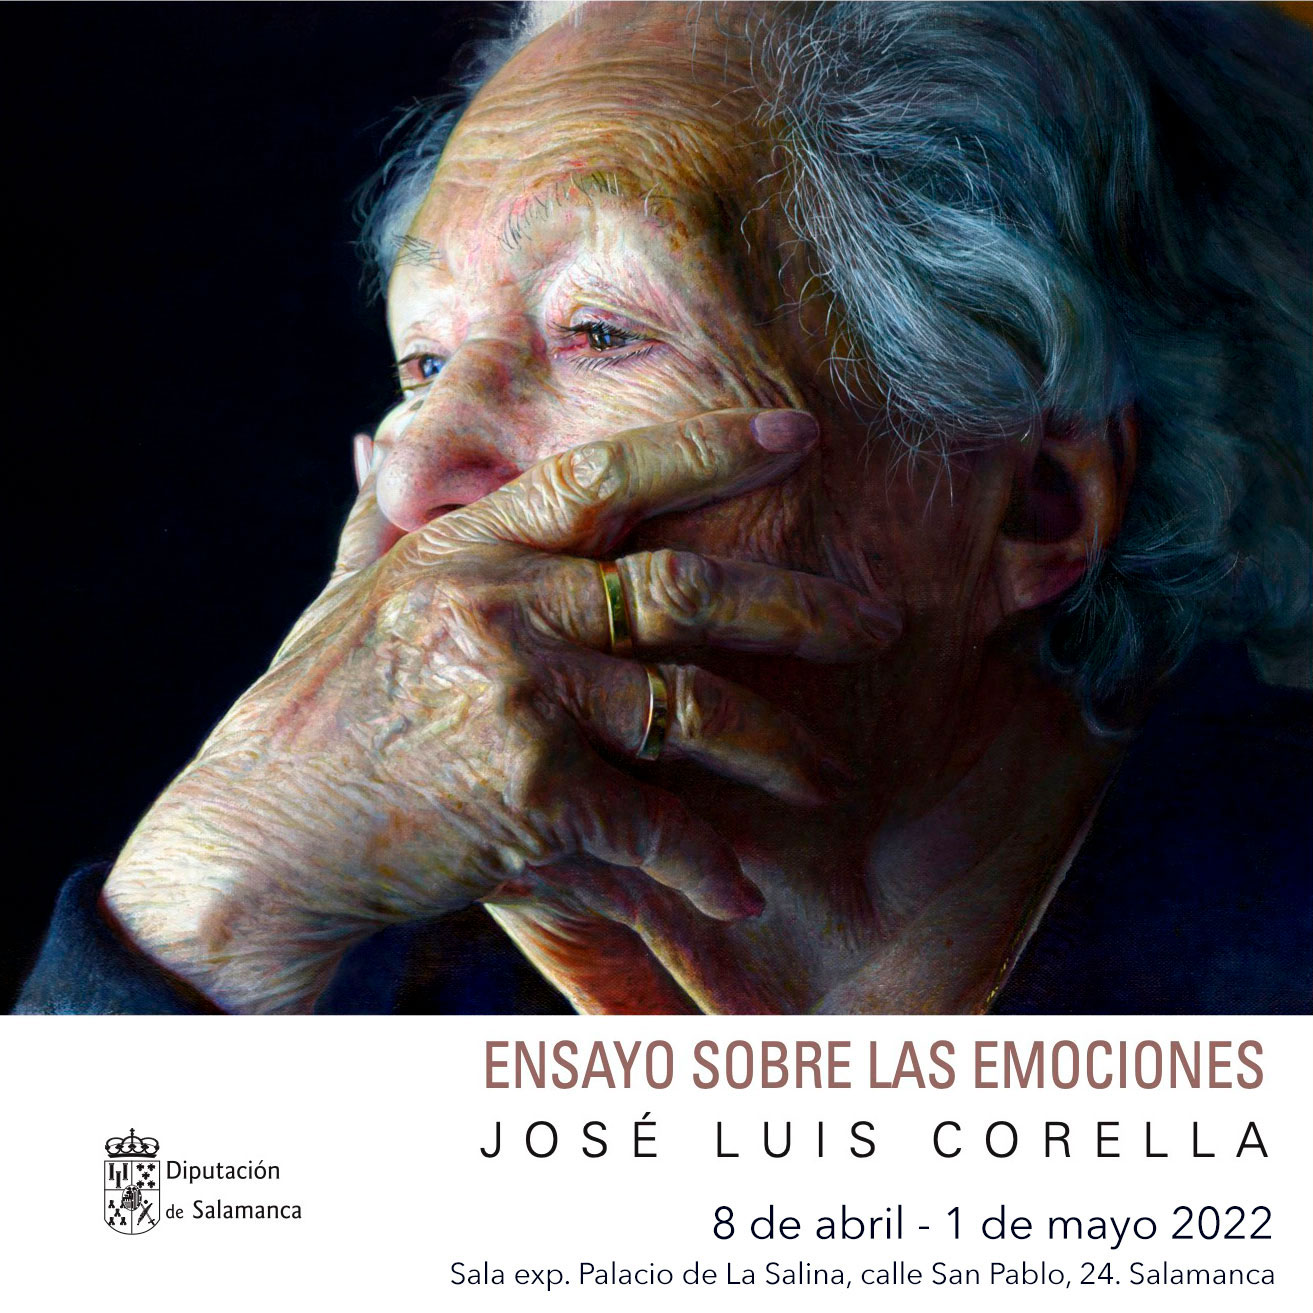 Exposición de José Luis Corella.. Ensayo sobre las emociones. 8 de abril al 1 de mayo 2022